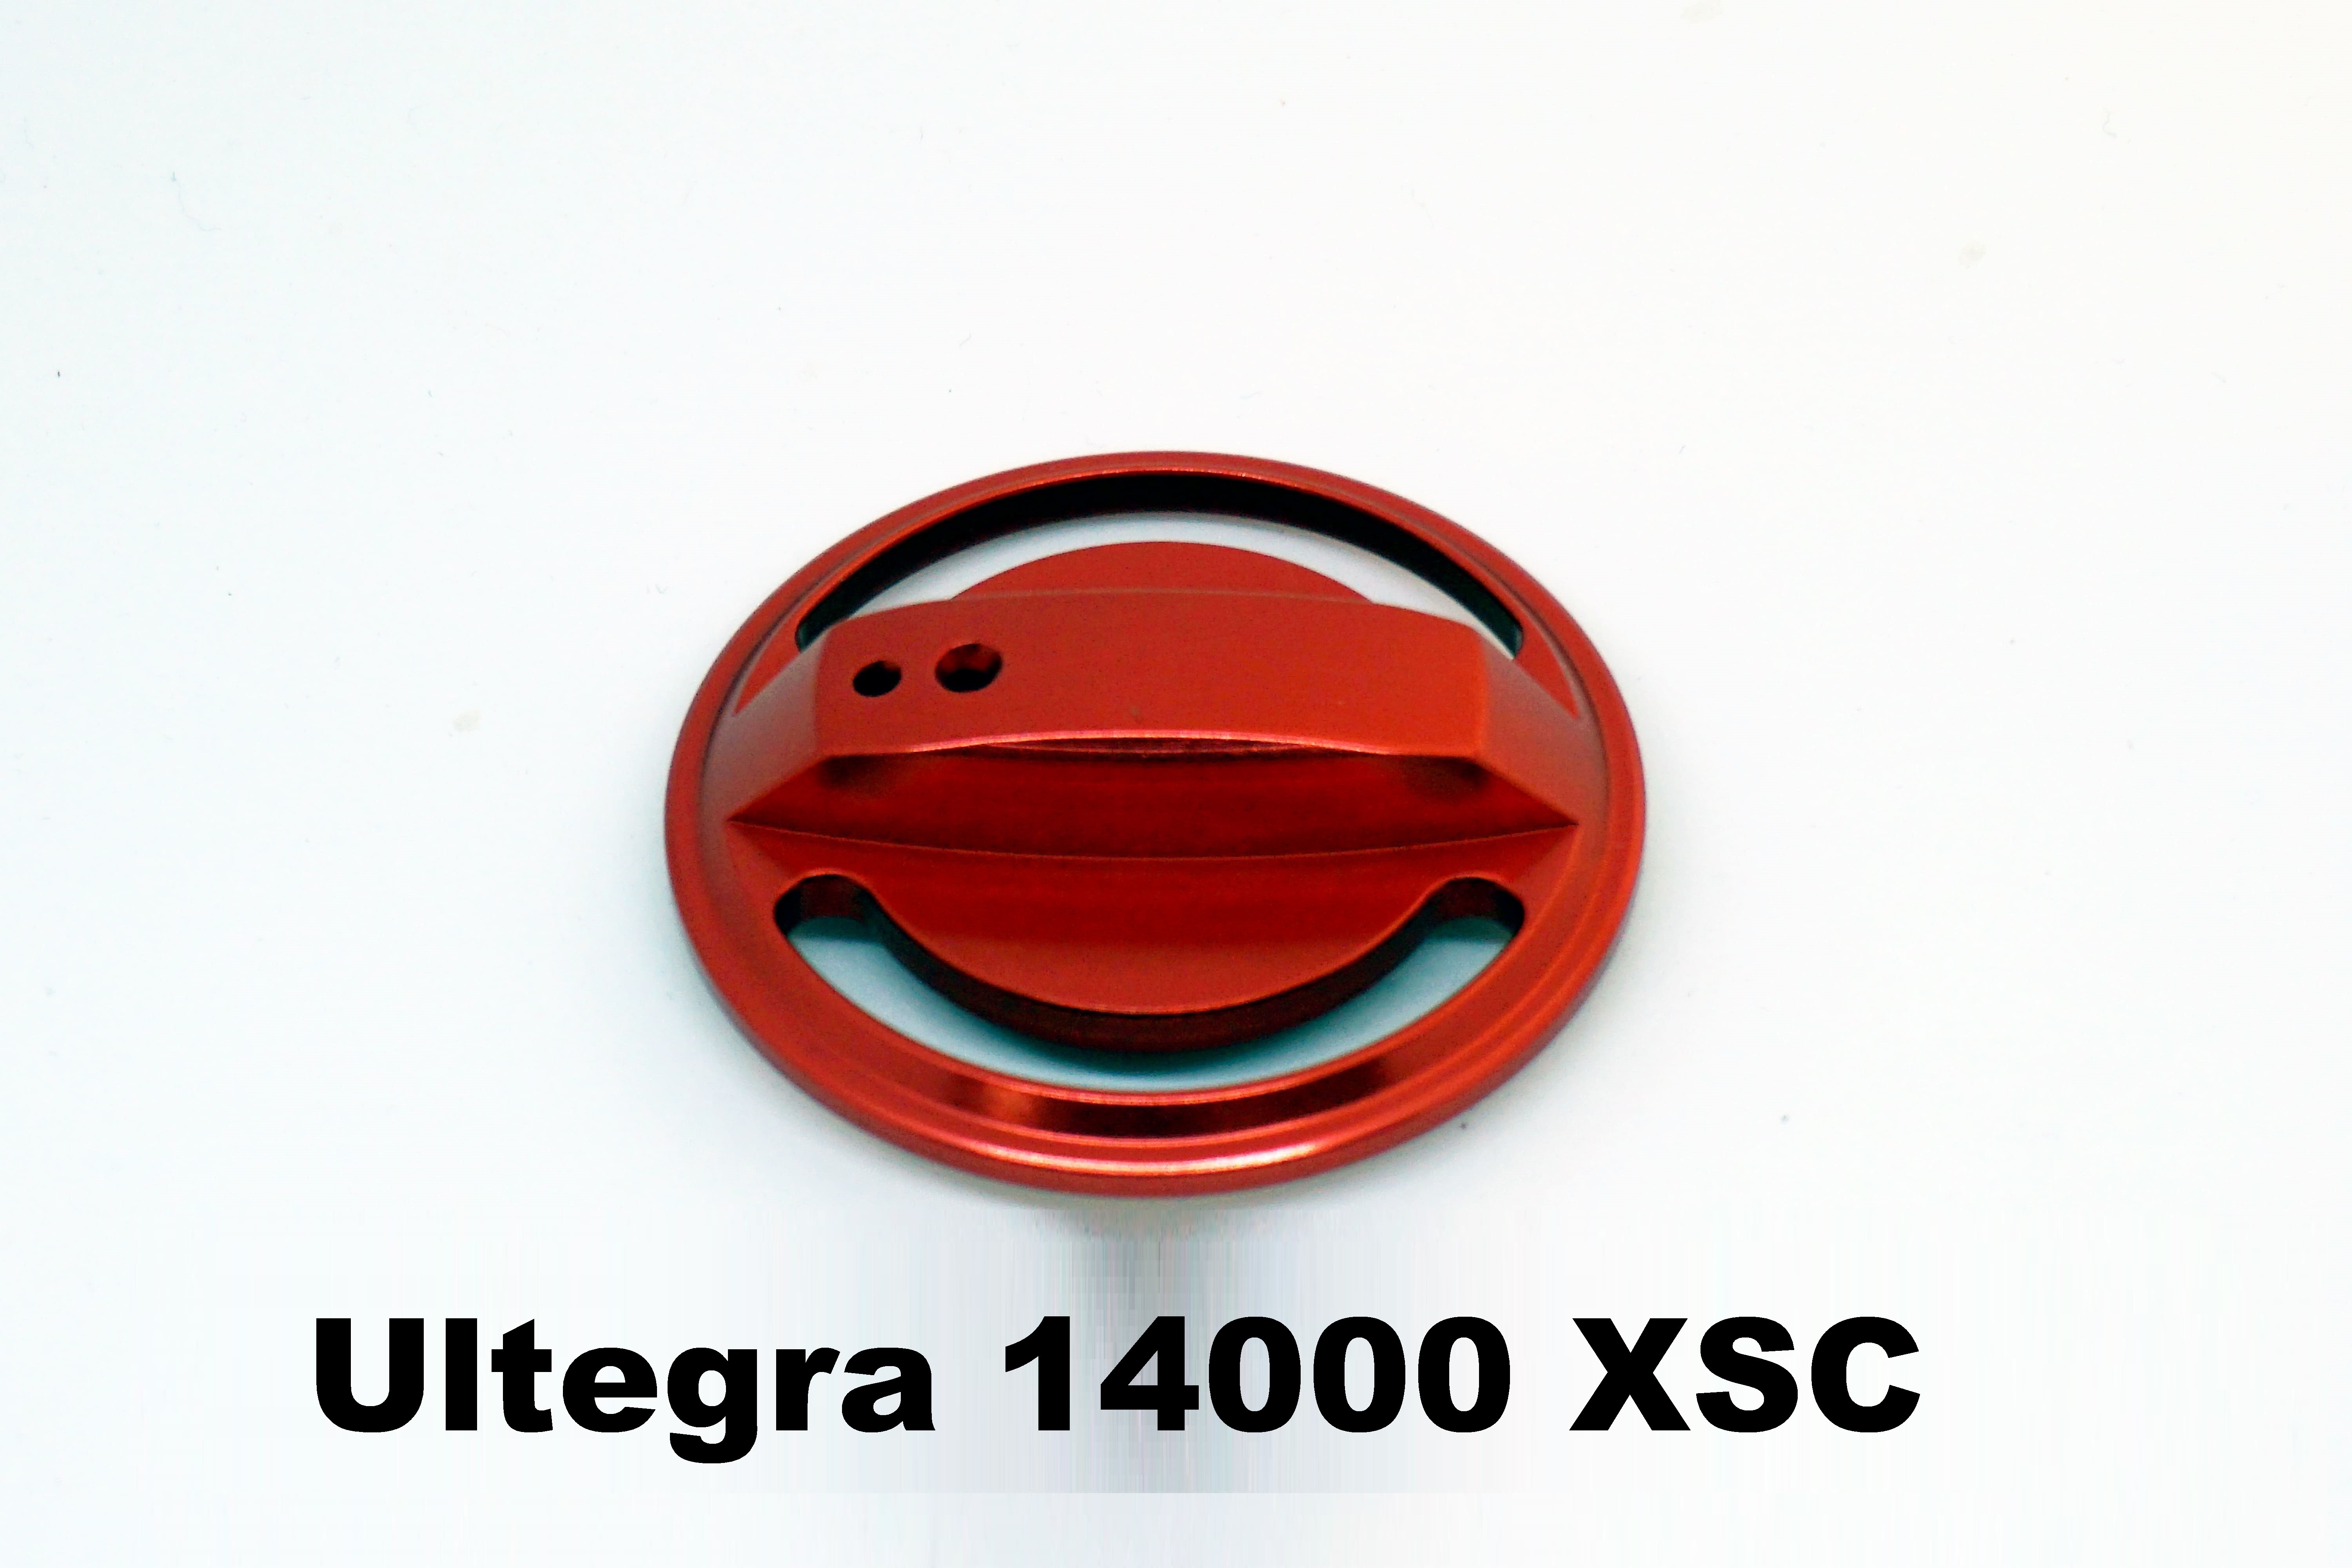 Remknop voor molen Ultegra 14000 XSC